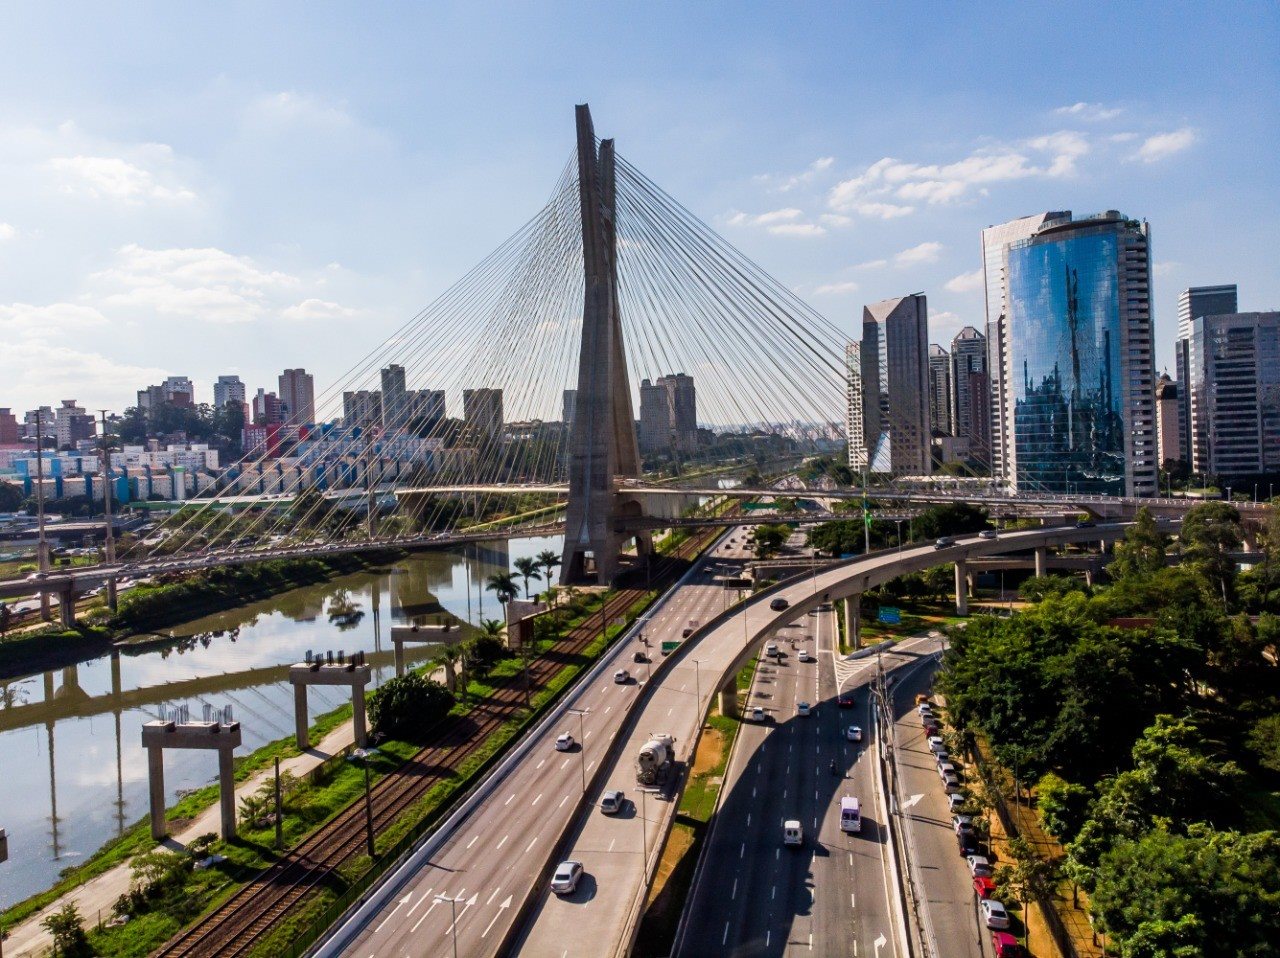 Saiba agora qual é a melhor forma de conhecer uma cidade como São Paulo!